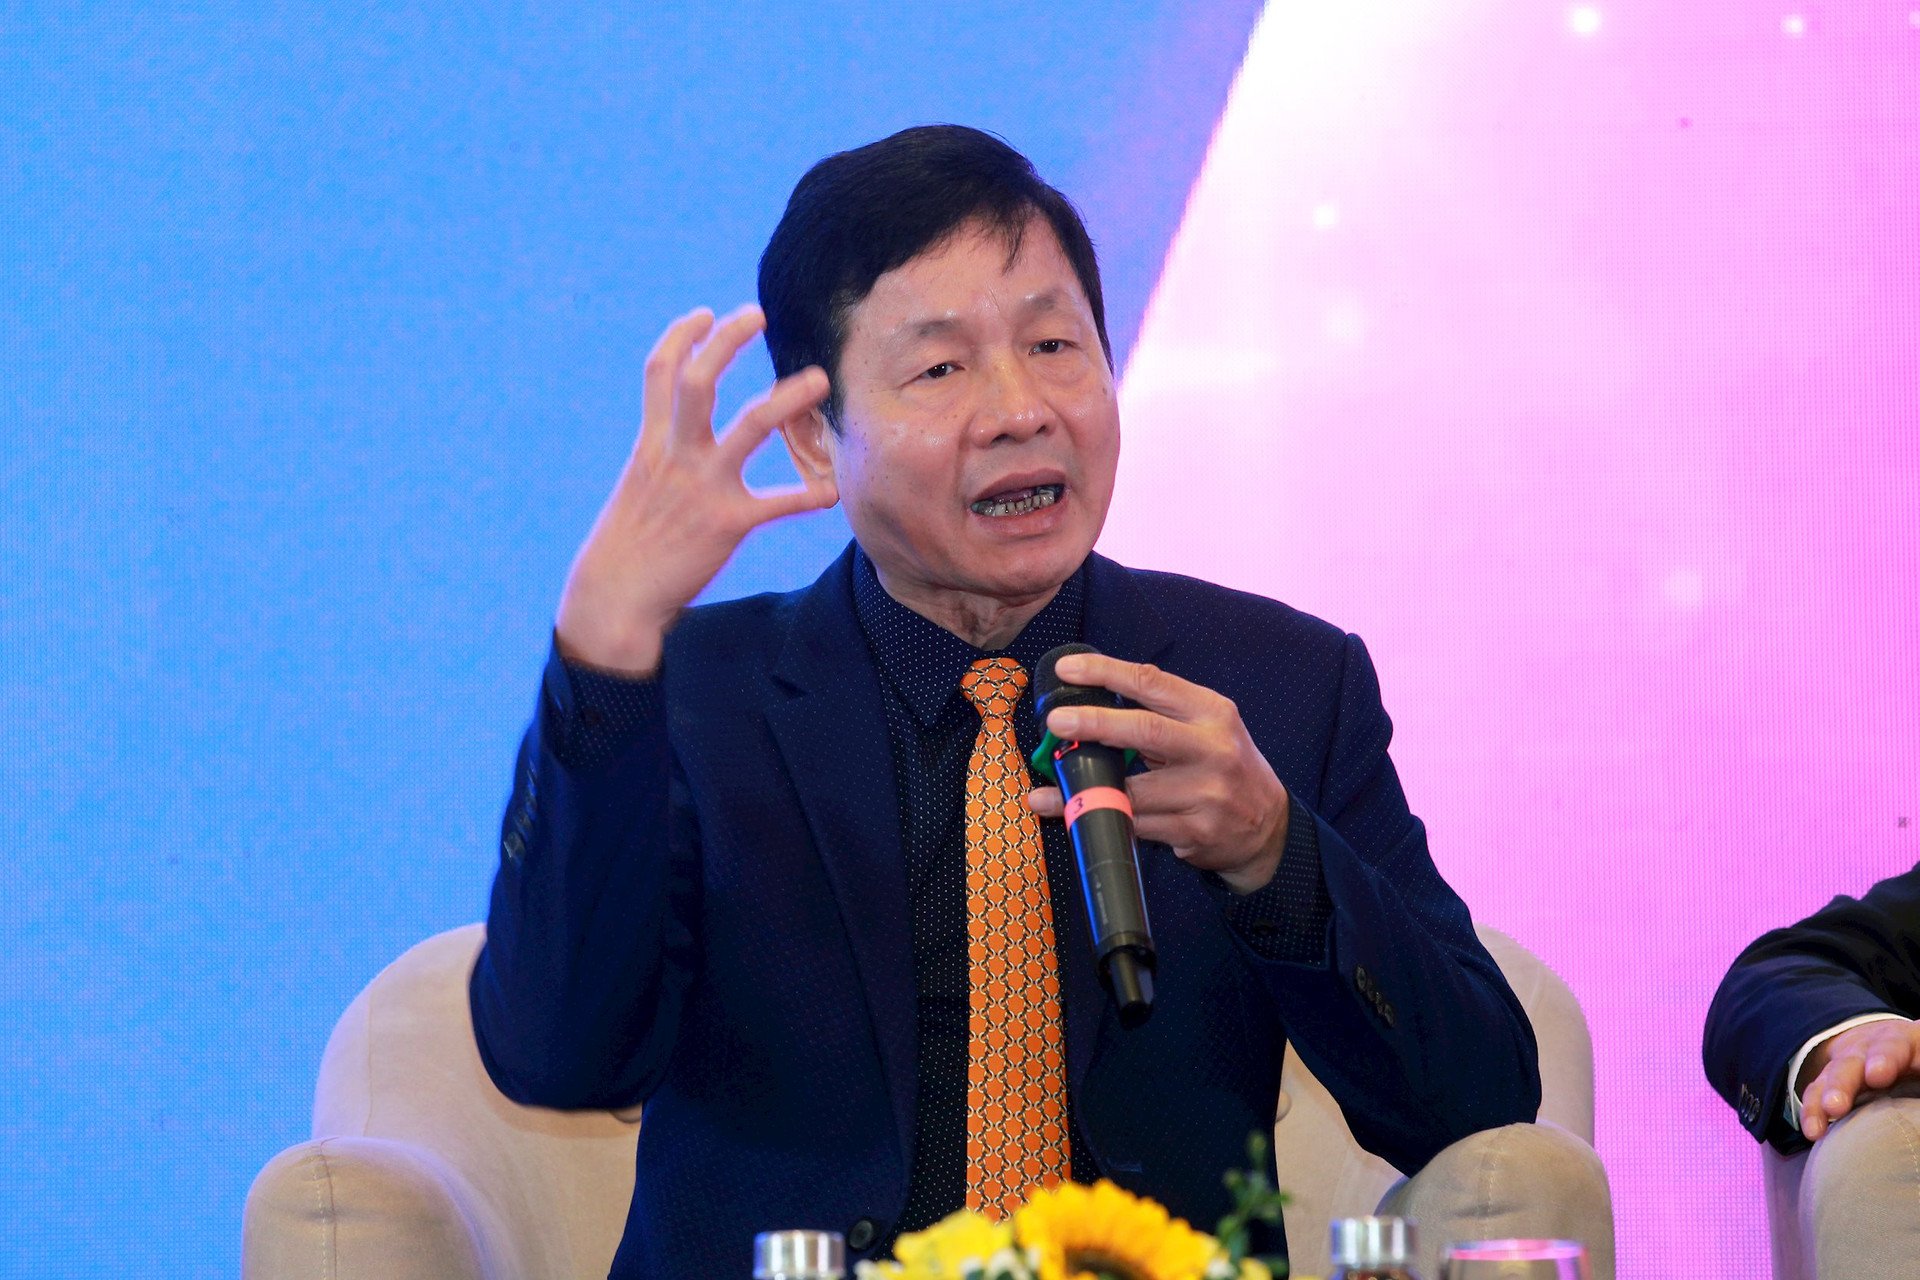 Chủ tịch FPT Trương Gia Bình : Doanh nhân phải trở thành người tốt đẹp nhất trong xã hội Việt Nam - Ảnh 2.